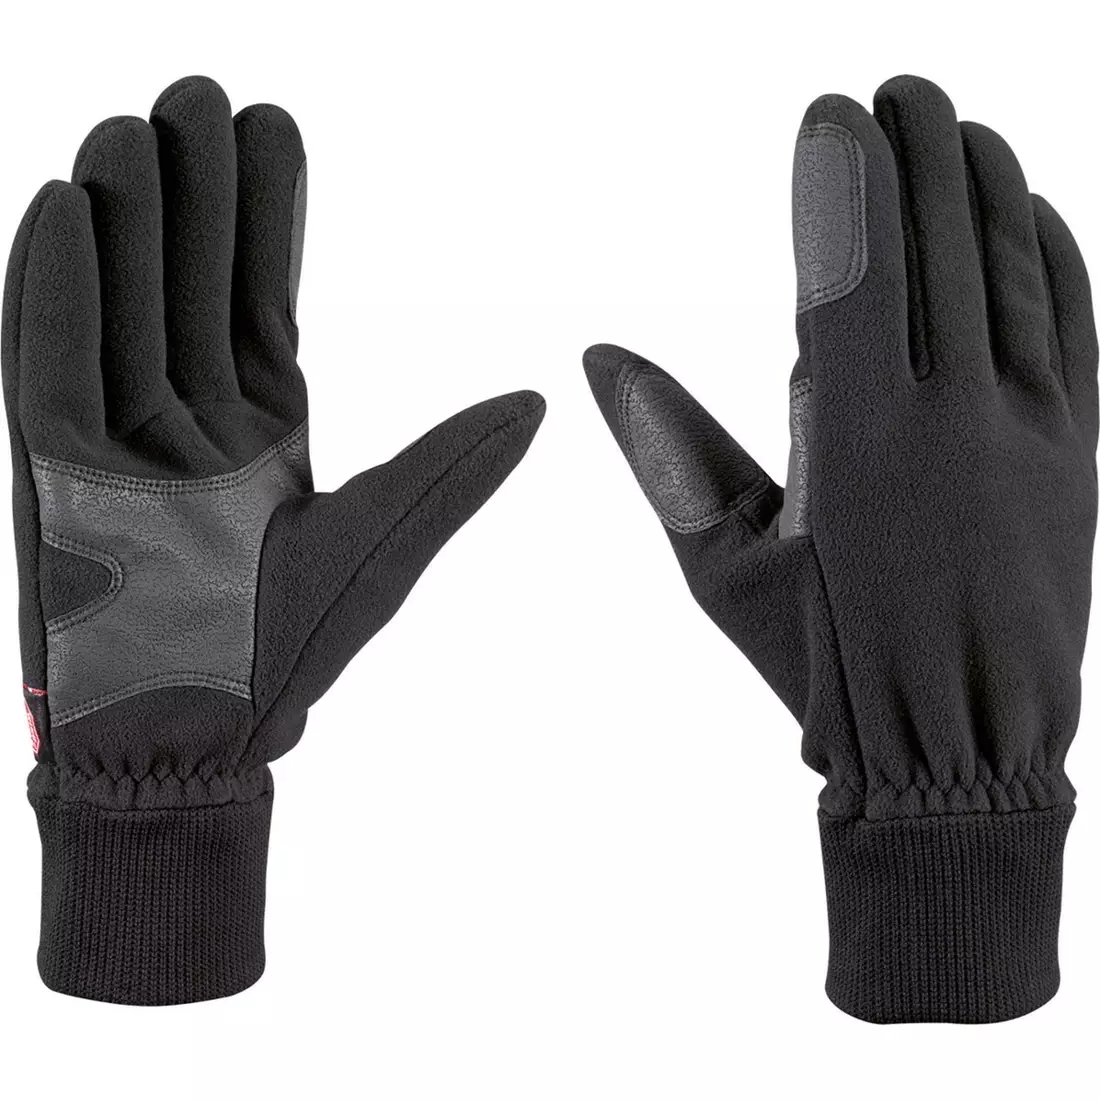 LEKI winter gloves Windstopper FLEECE black 63581423105